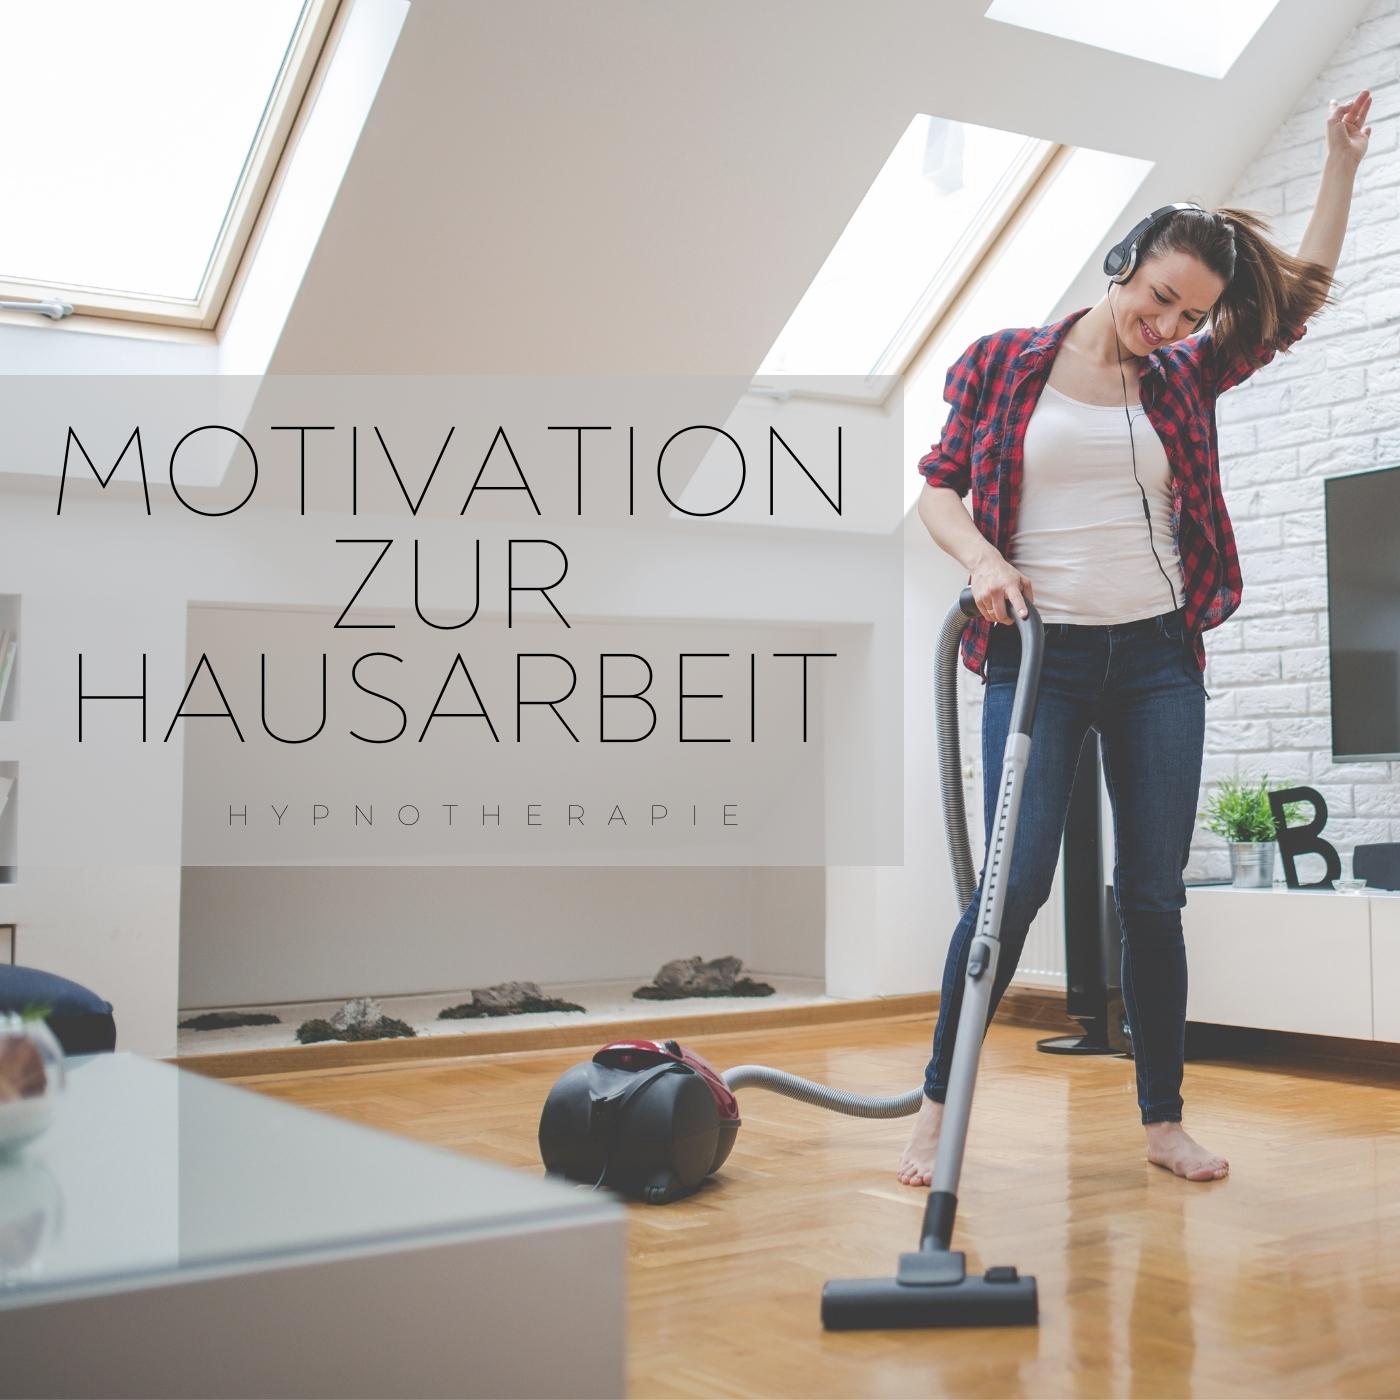 Motivation zur Hausarbeit - Hypnosetherapie